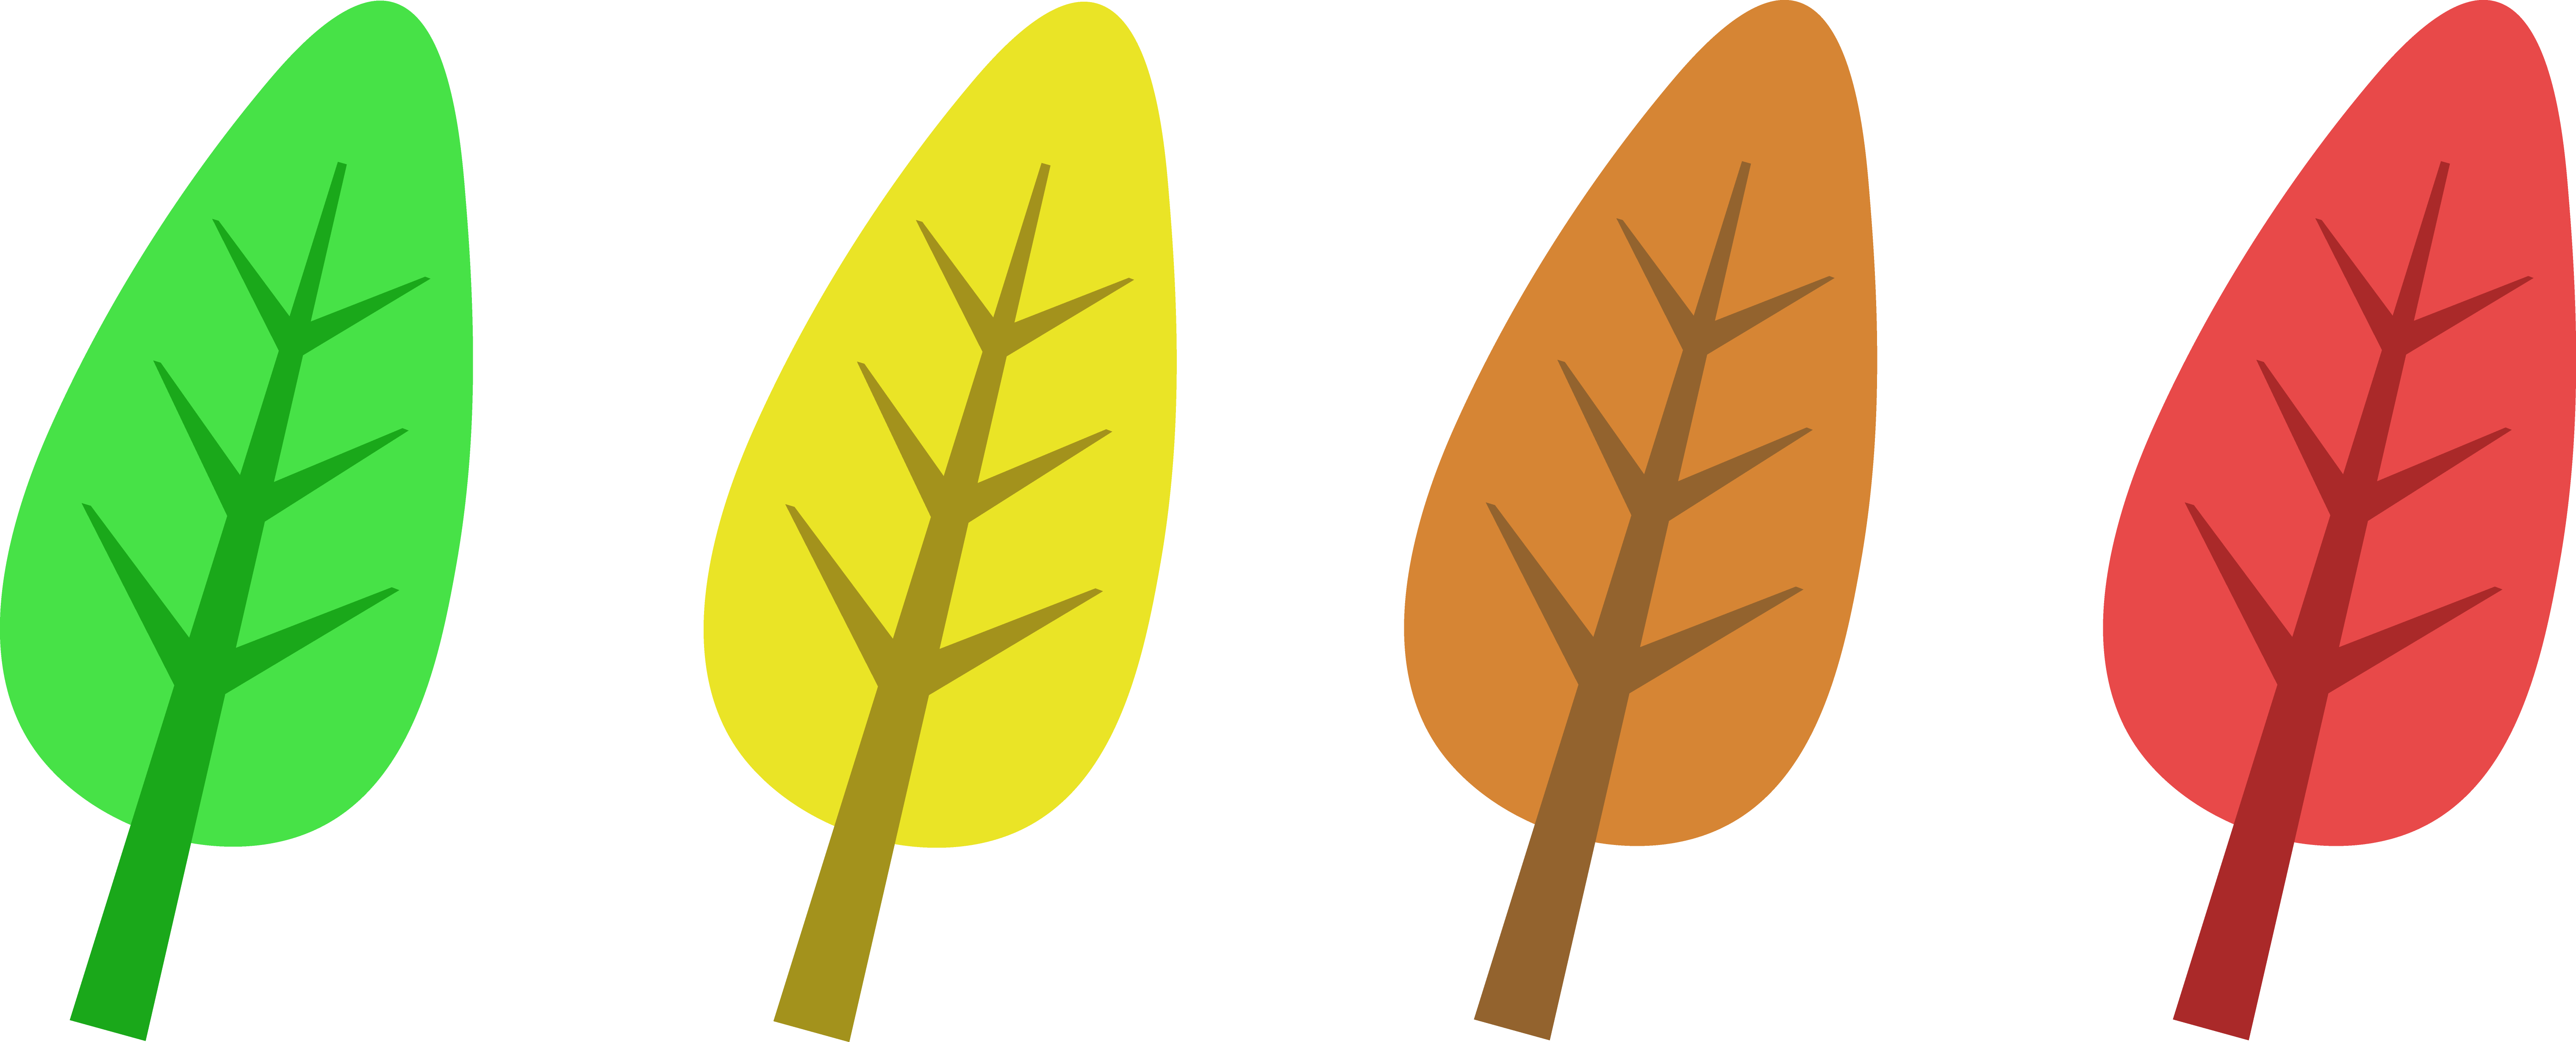 Fall Leaves Clip Art Vector V